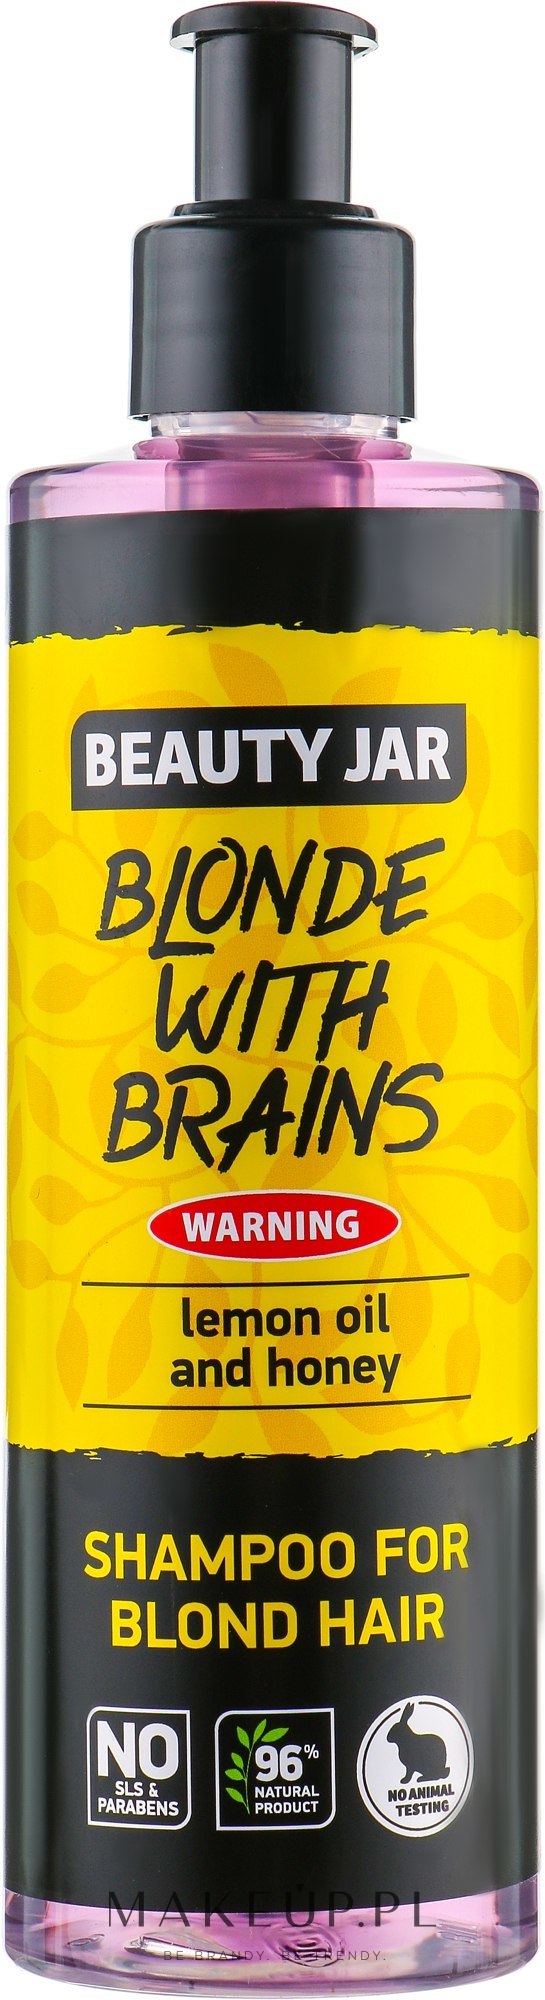 blonde with brain szampon